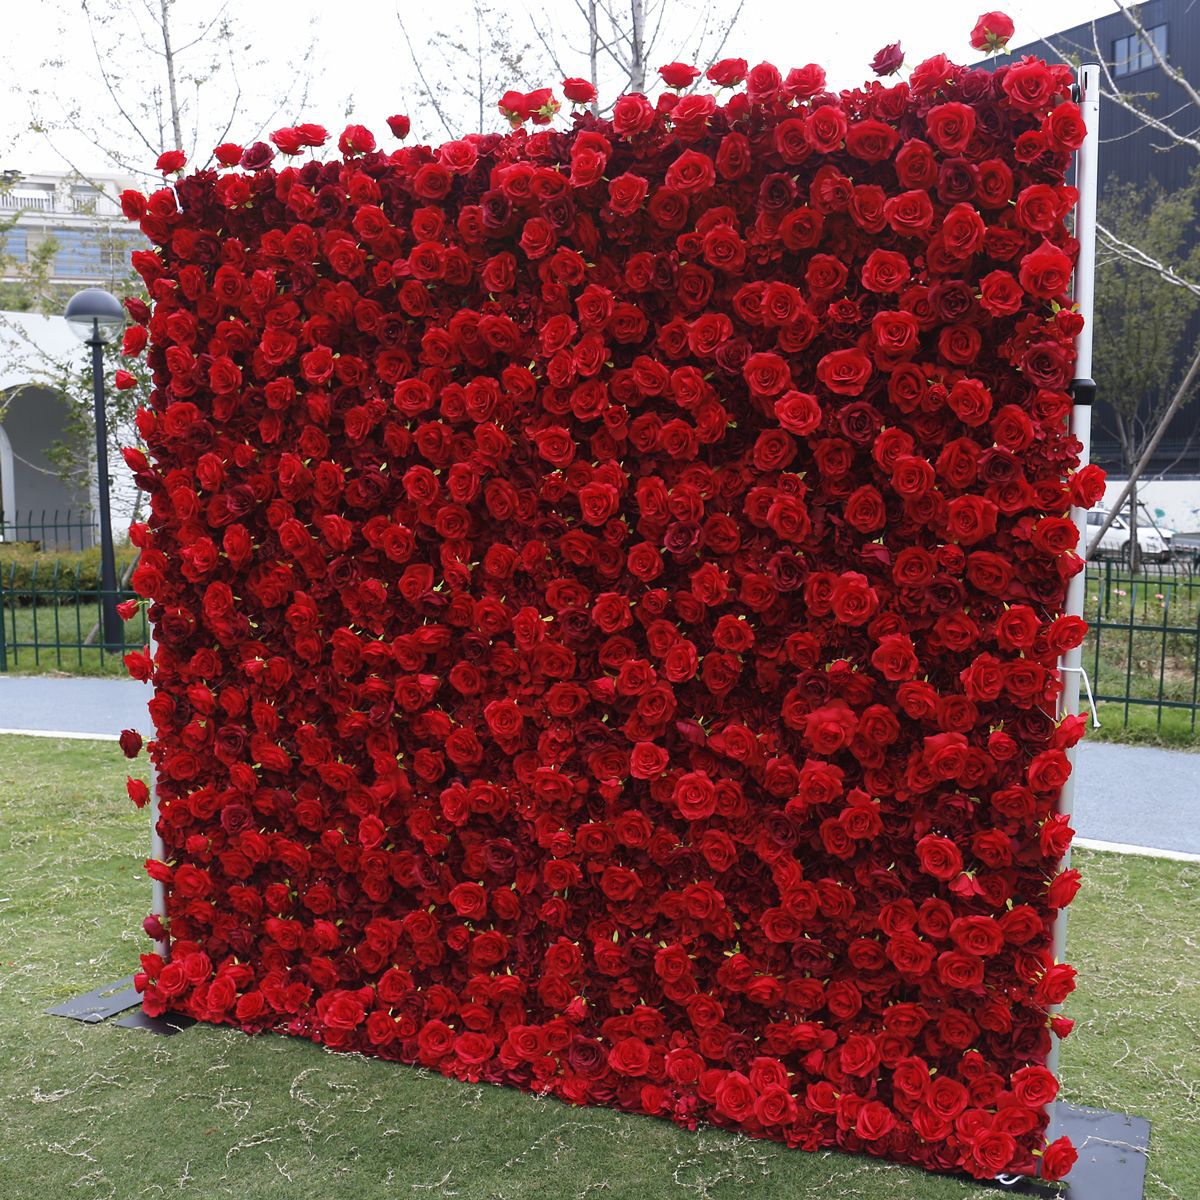 Червона 5D тканина нижня симуляція квітка стіна фон стіна зовнішня торгівля Amazon весільні прикраси на відкритому повітрі